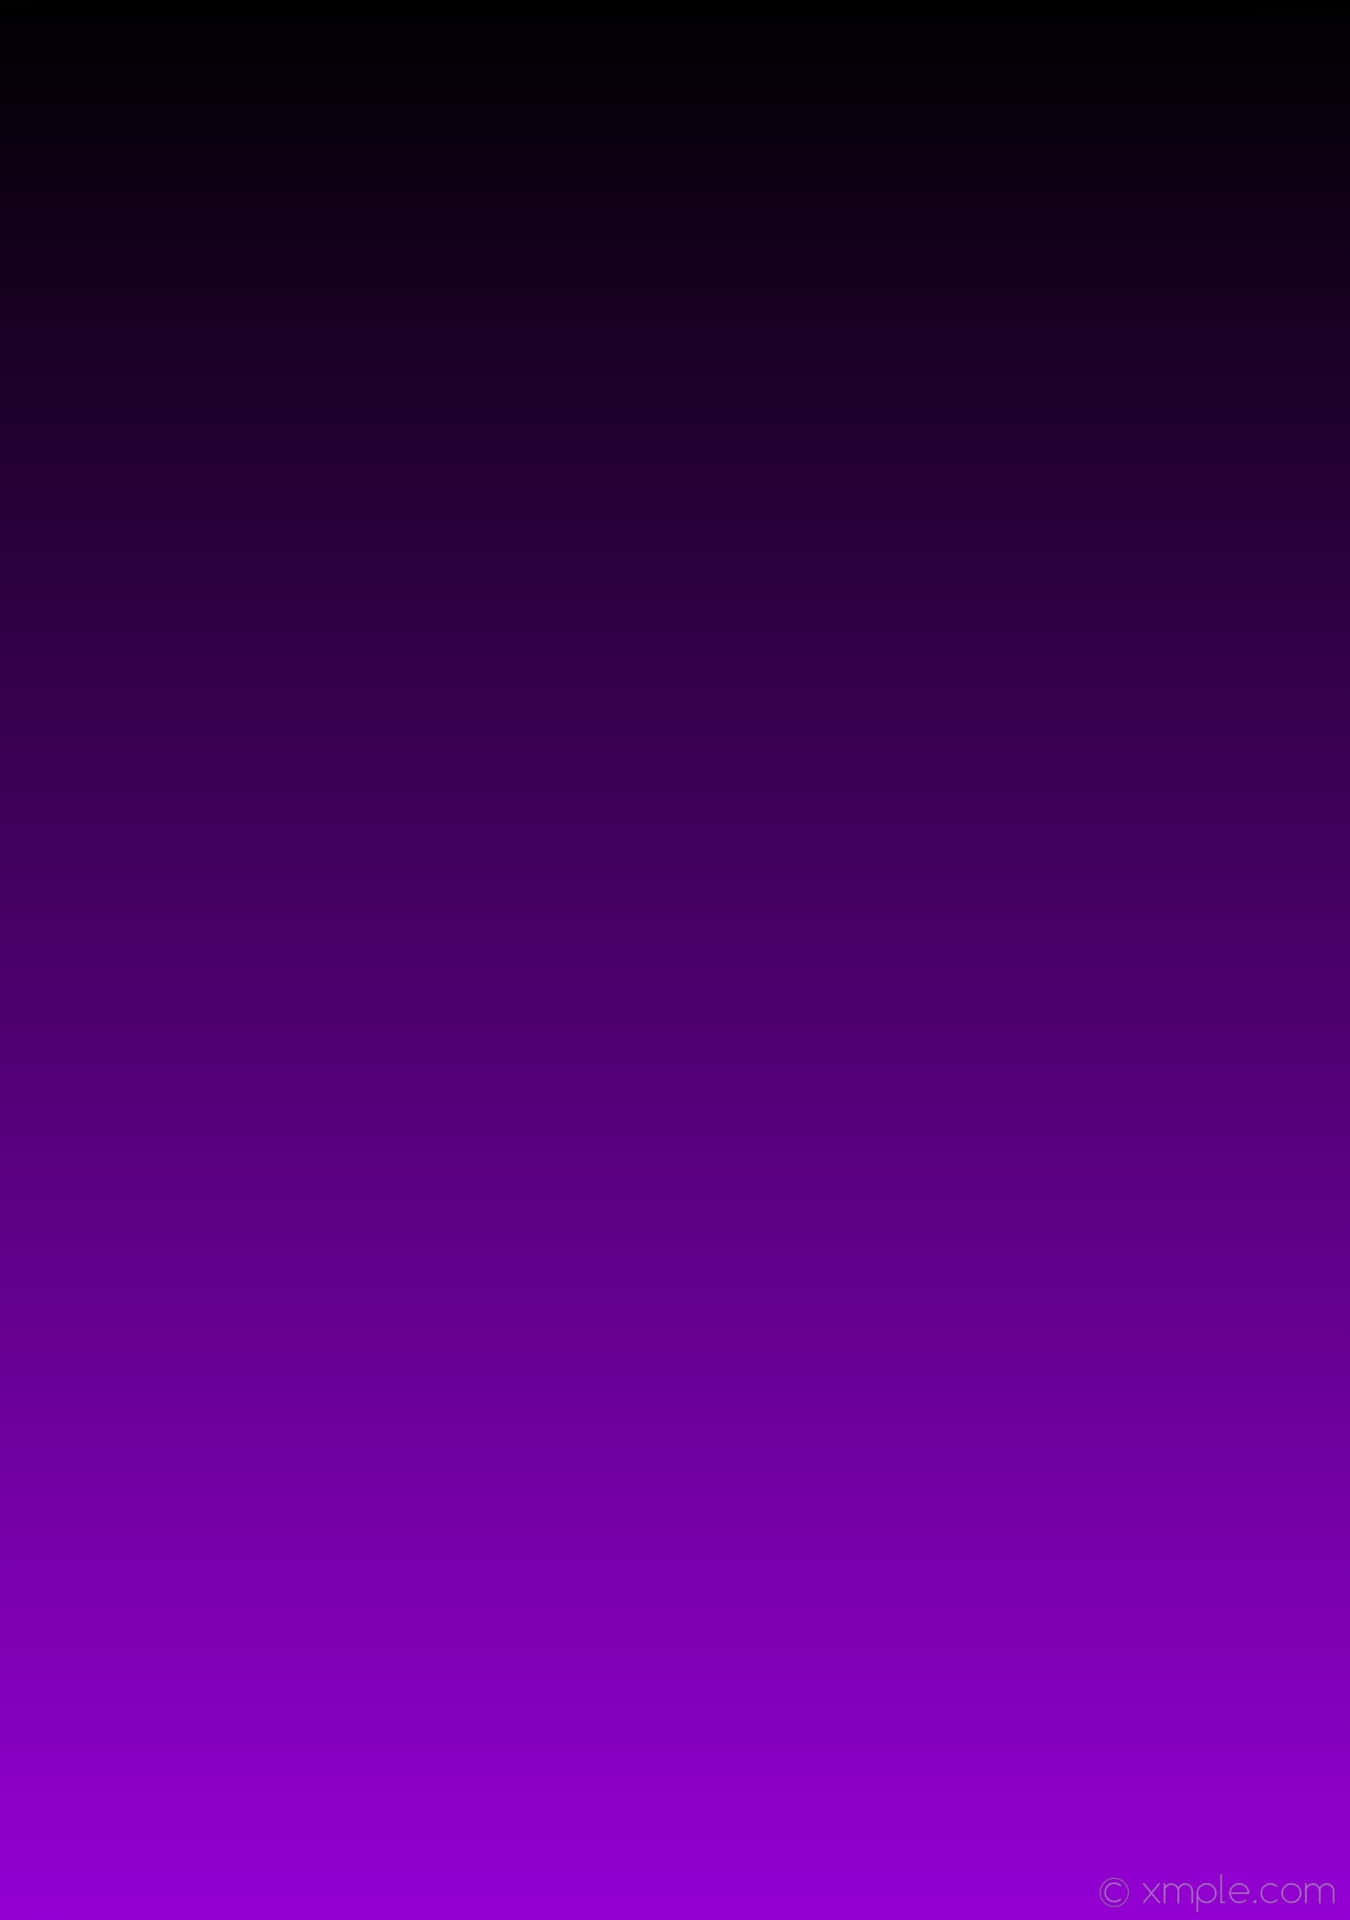 Solid Color Purple Gradient Landscape Background